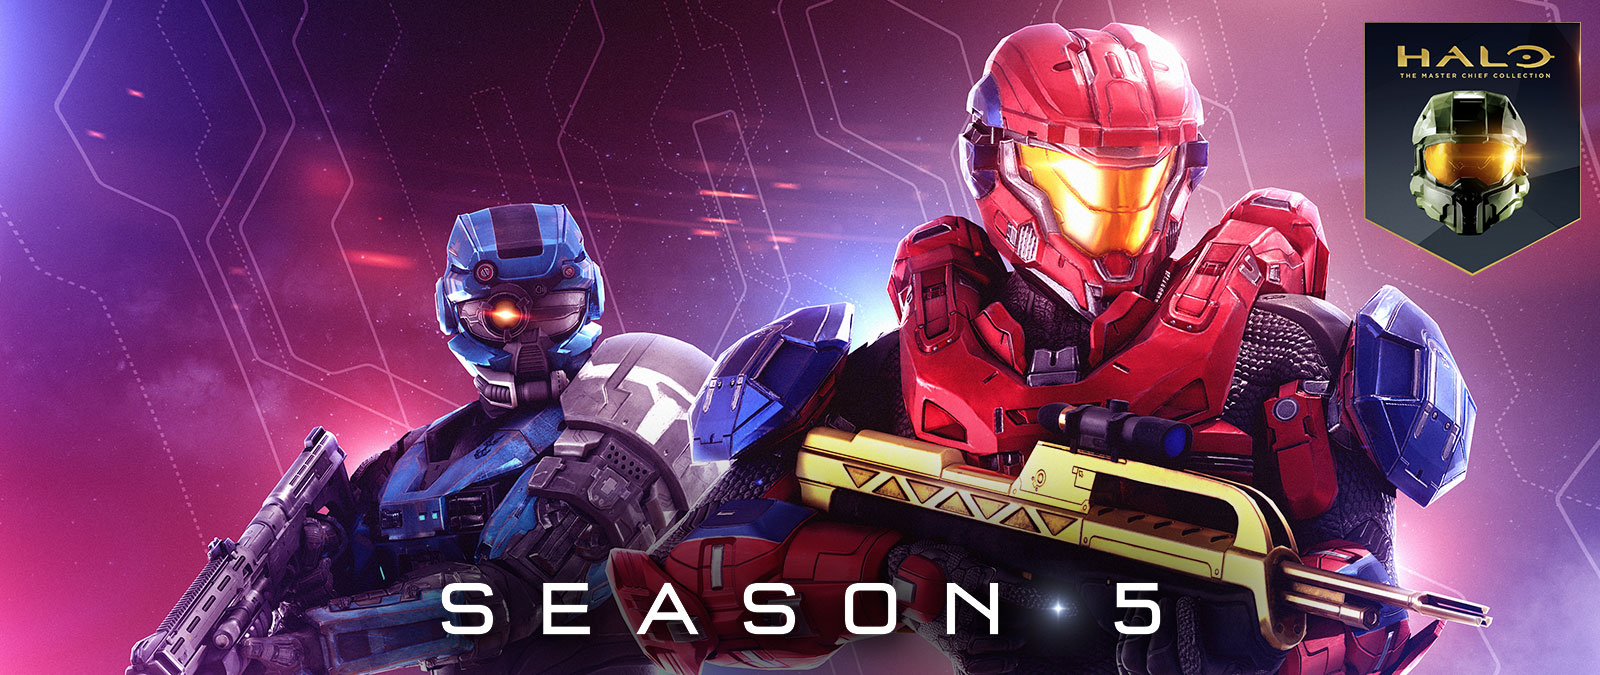 Halo: The Master Chief Collection, Temporada 5, Um Spartan vermelho segura uma espingarda de batalha de ouro enquanto um Spartan azul usa um capacete especial com um olho